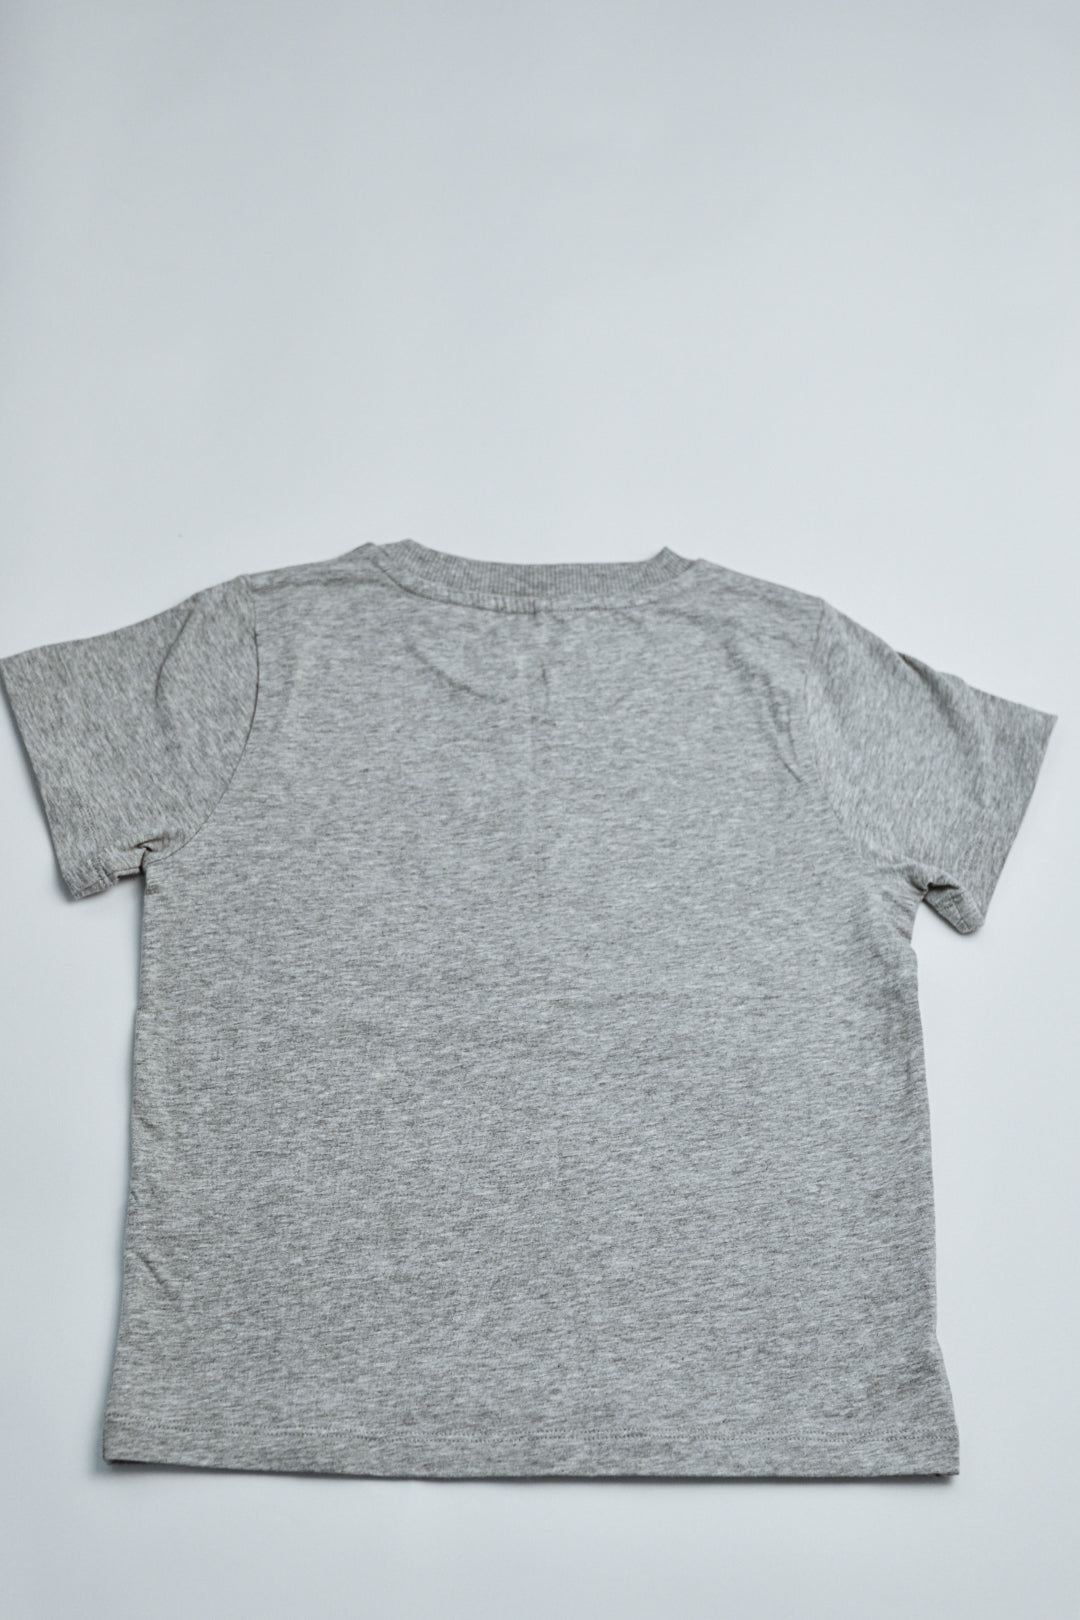 RE LOVED Mini Rodini t- shirt size 5-7